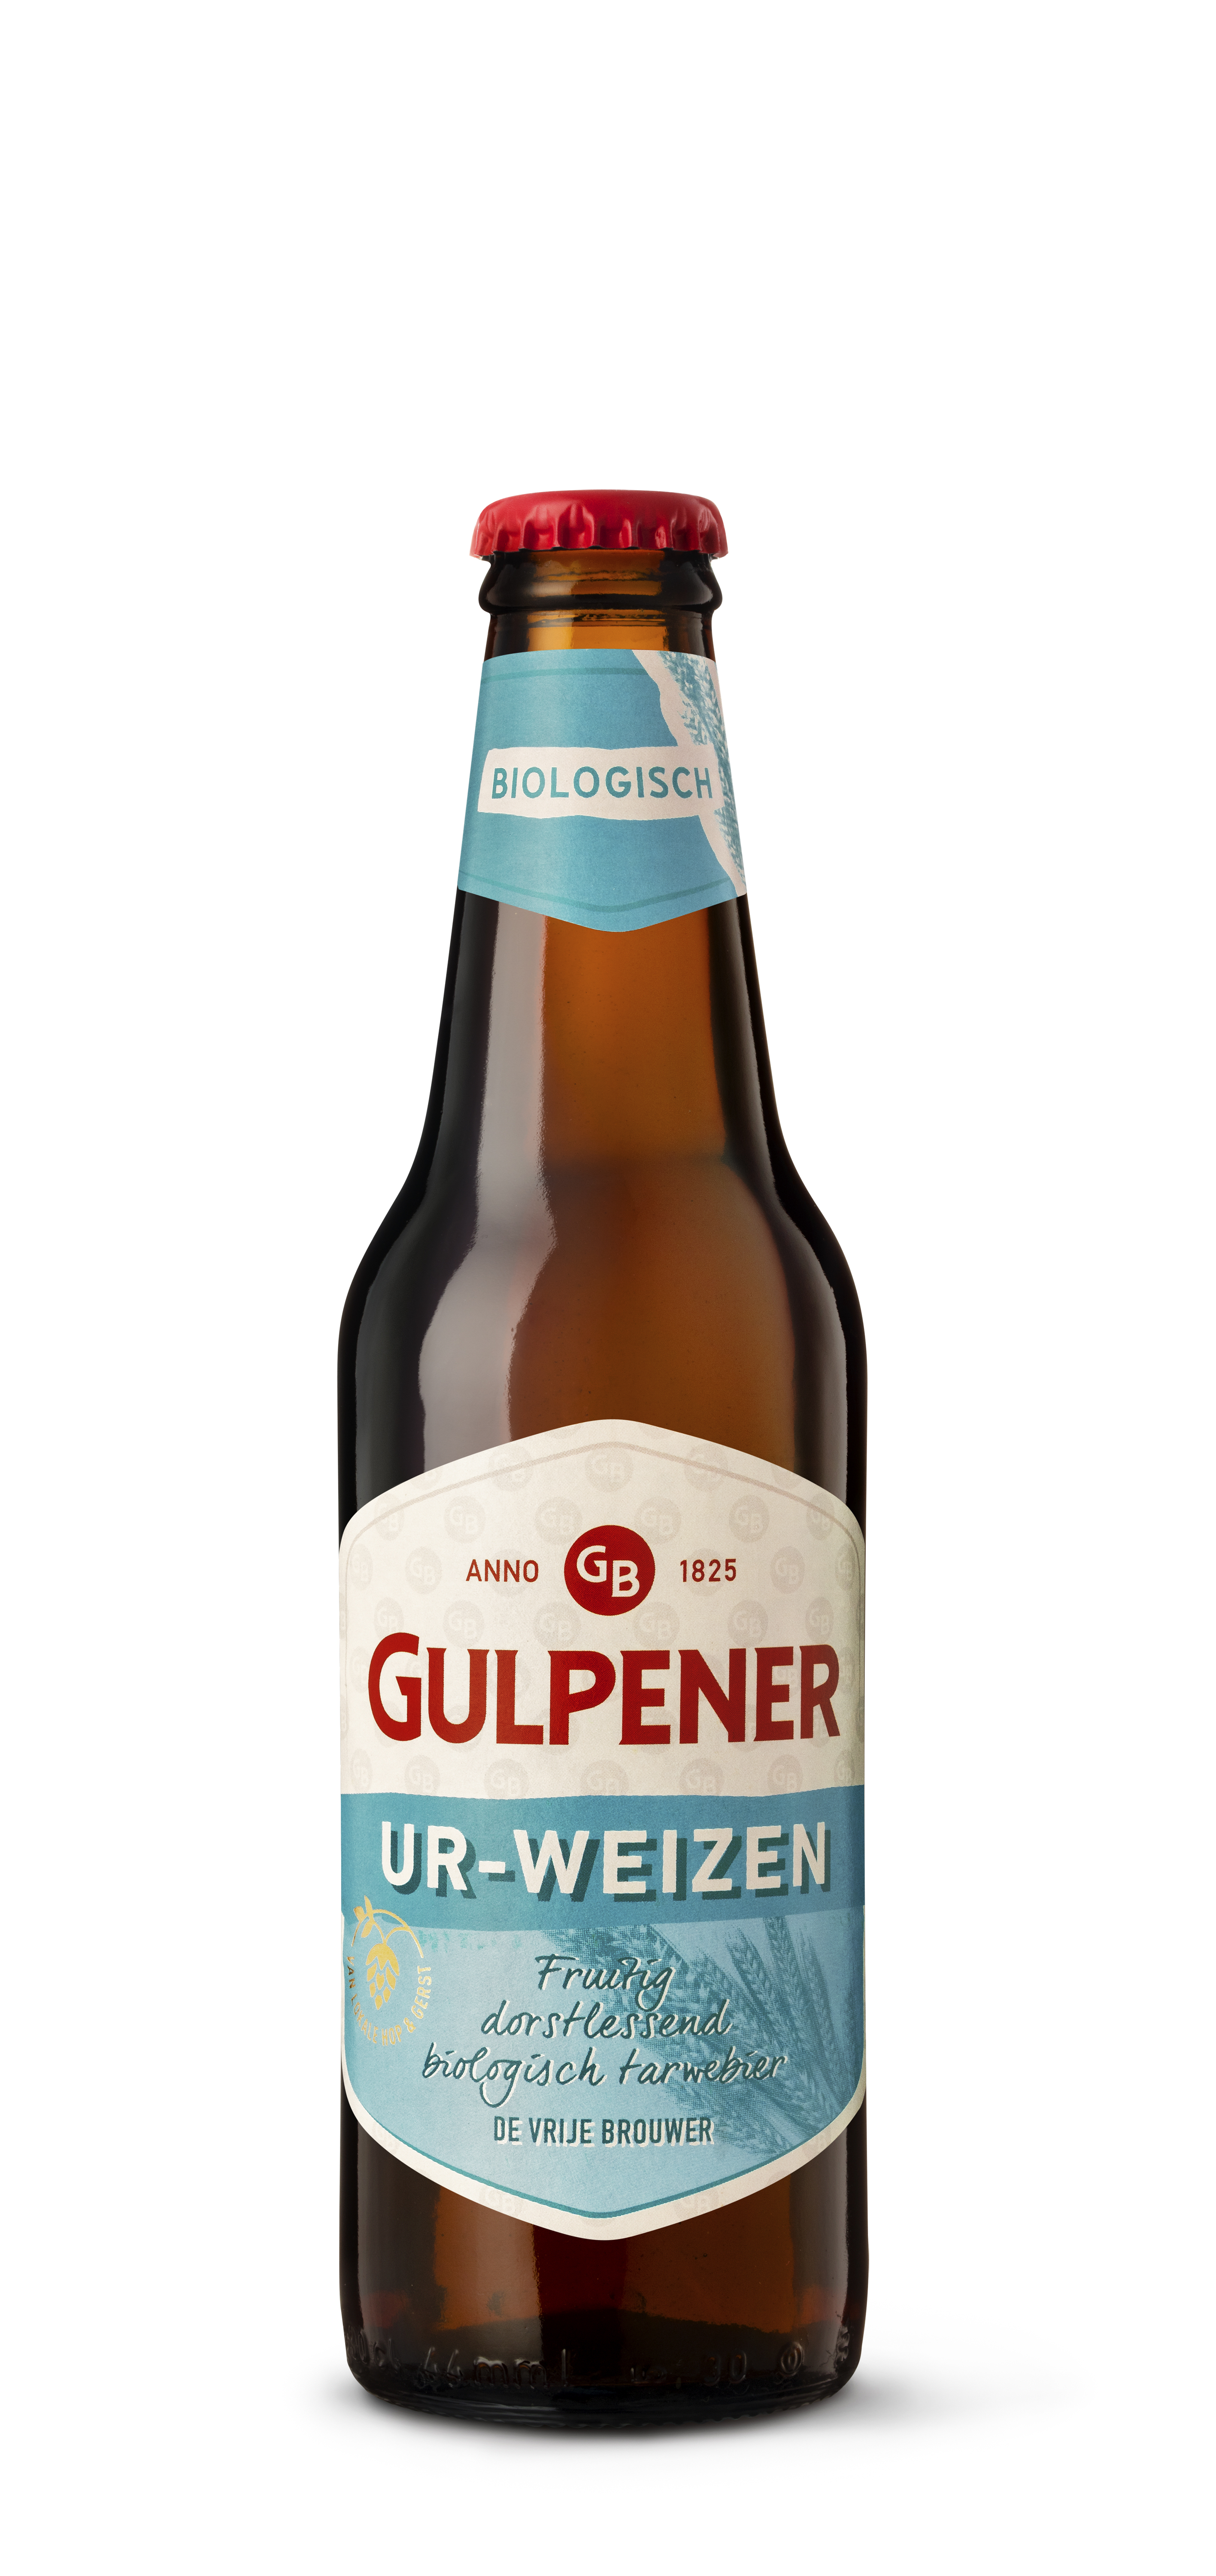 Gulpener Bio Ur-Weizen 6p Krat 4x6x30 cl 5,3%